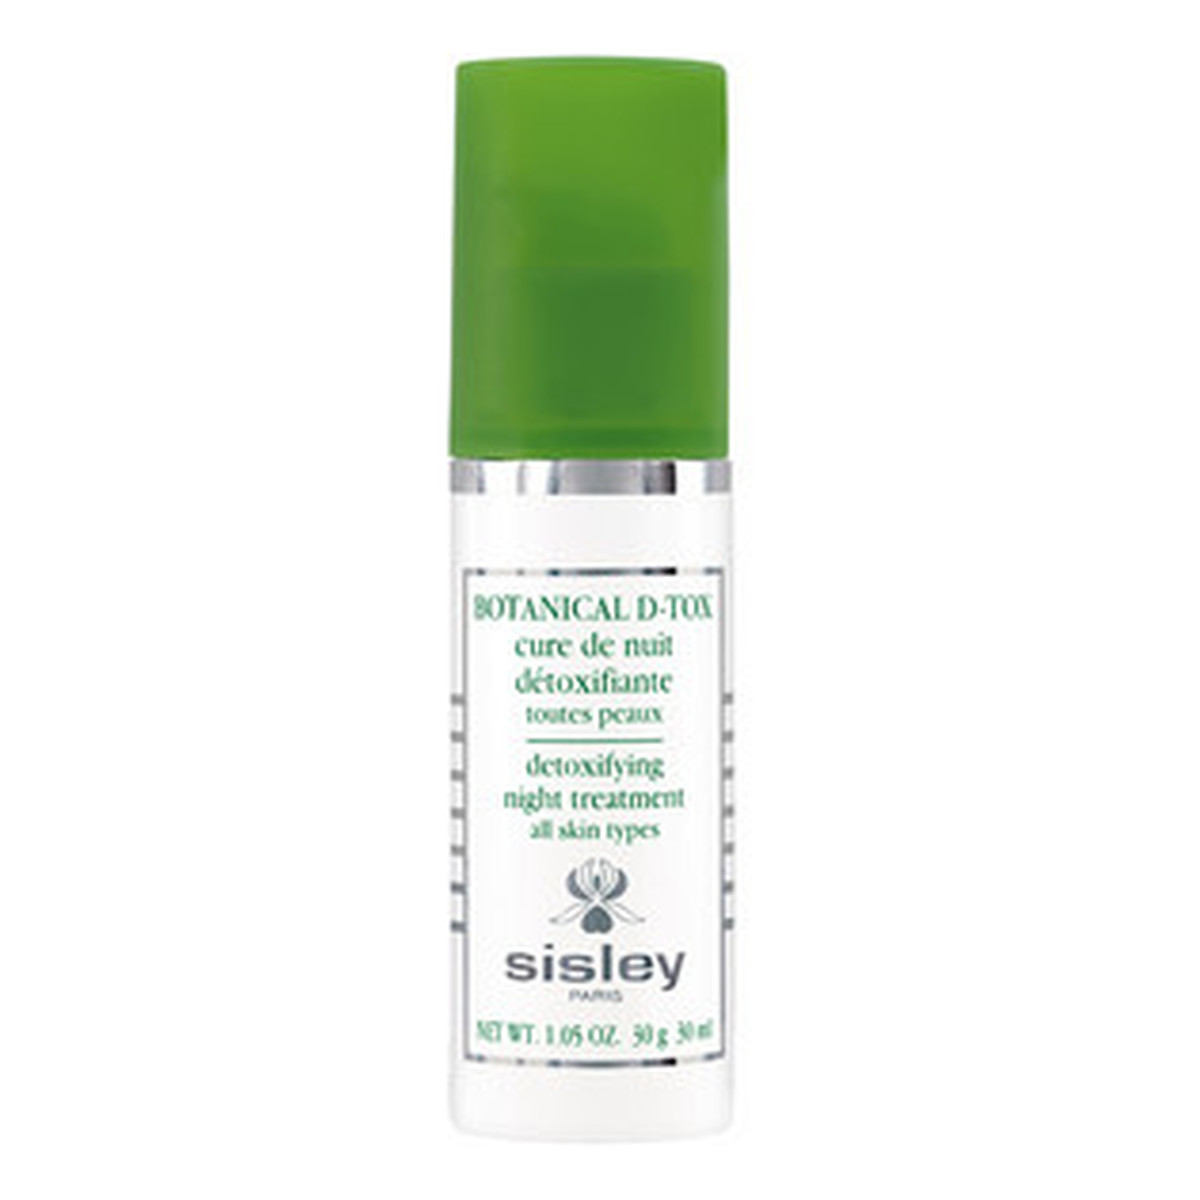 Sisley Botanical D-Tox Detoxifying Night Treatment Kuracja nocna o działaniu detoksykującym 30ml